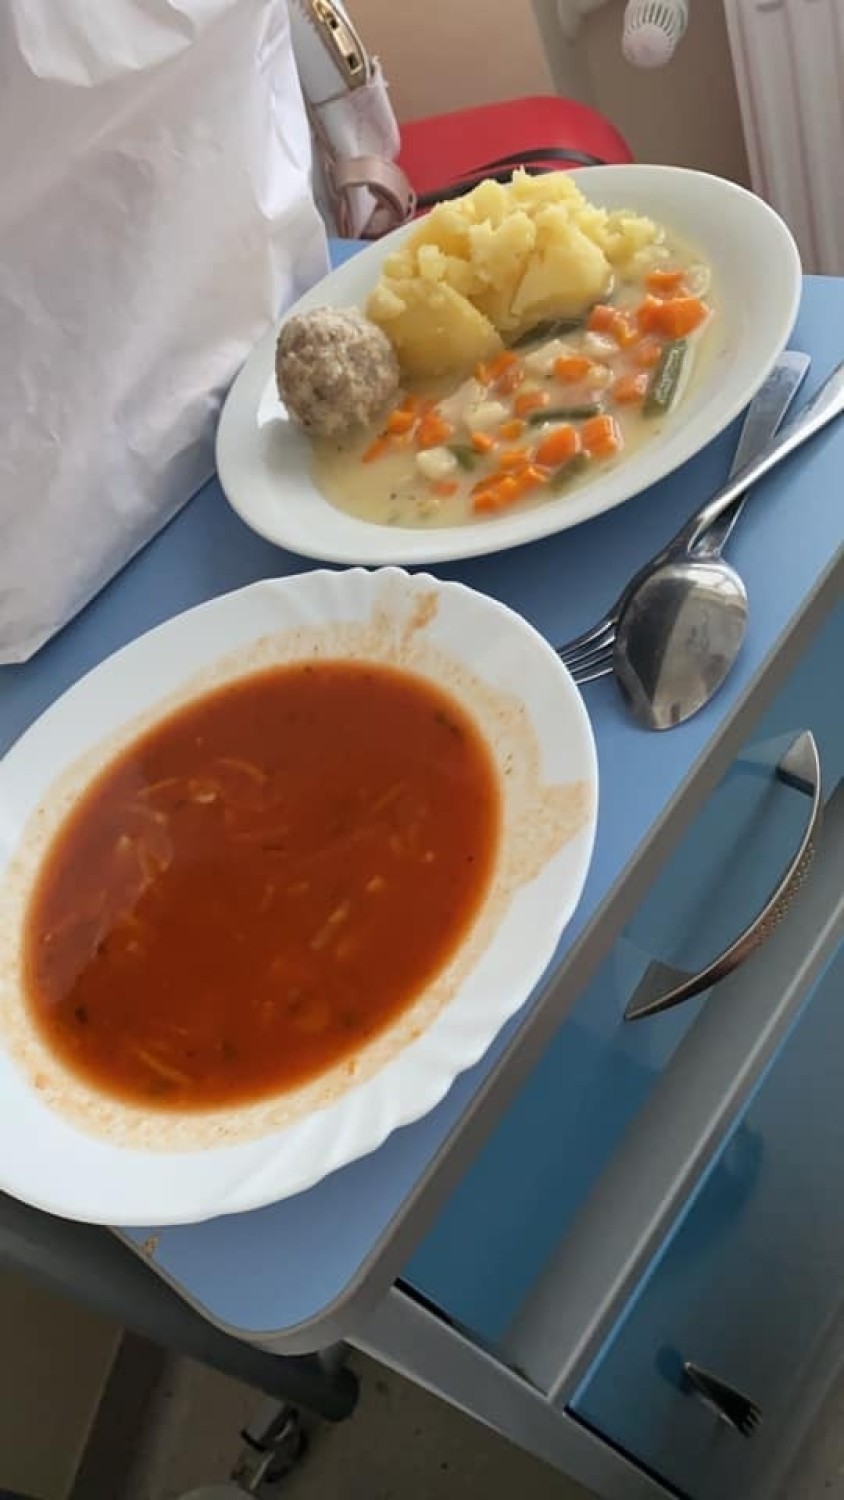 Oto posiłki w pomorskich szpitalach. Pacjenci pokazali zdjęcia. Jest poprawa? 